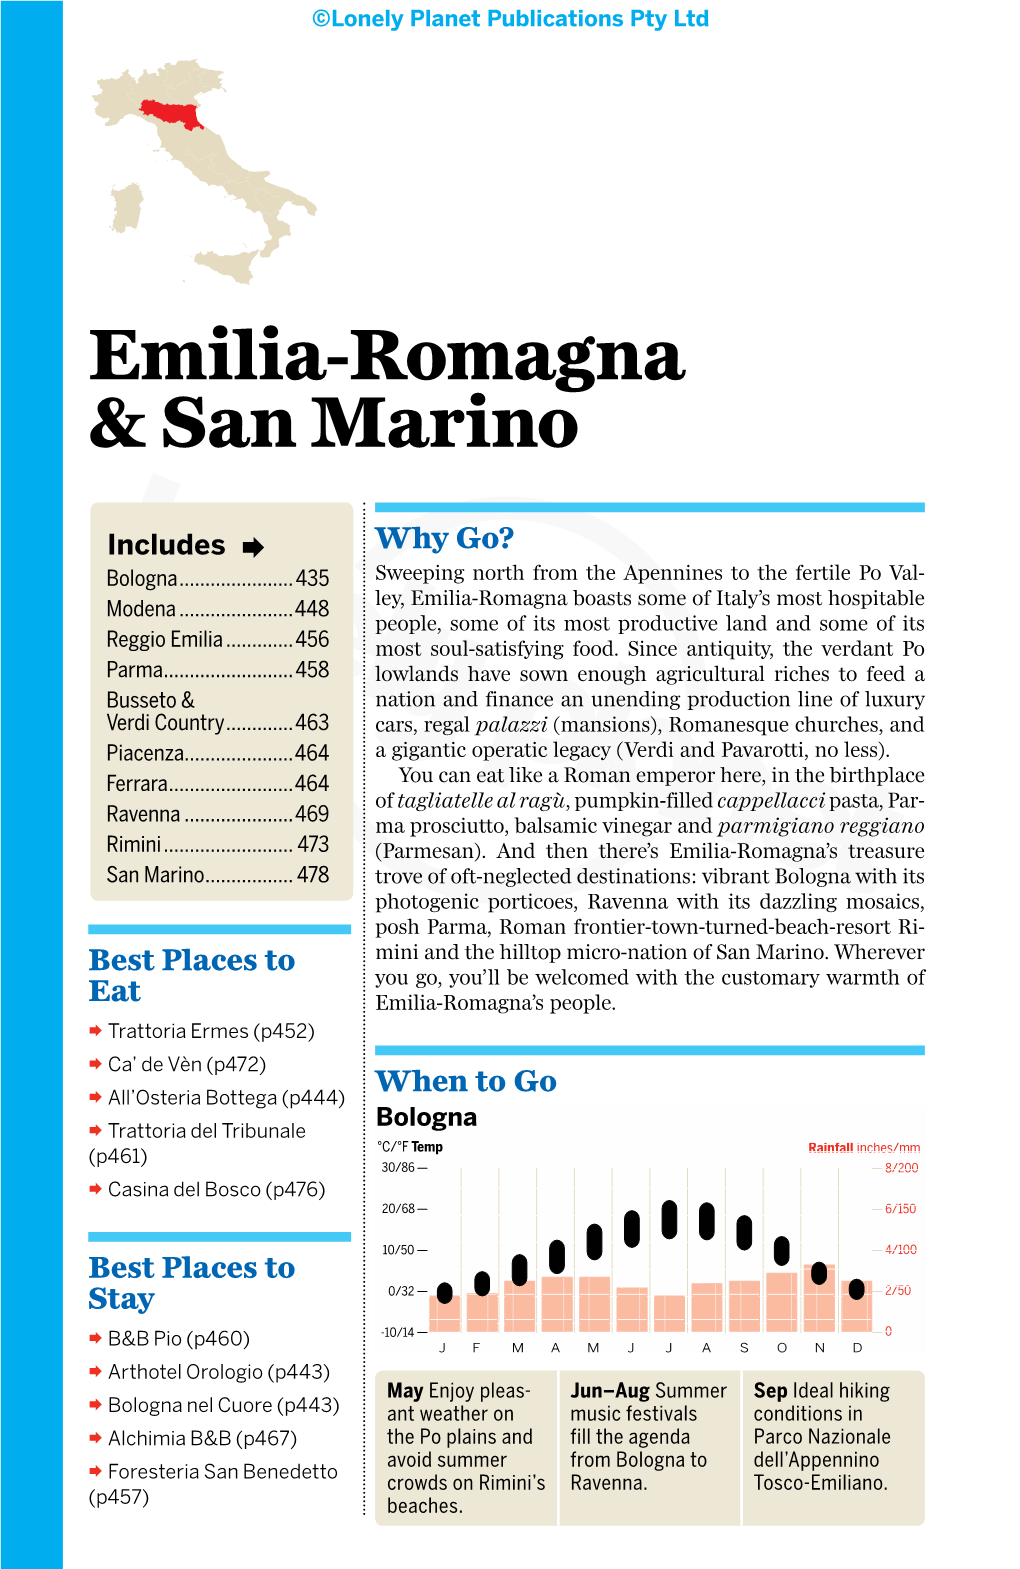 Emilia-Romagna & San Marino